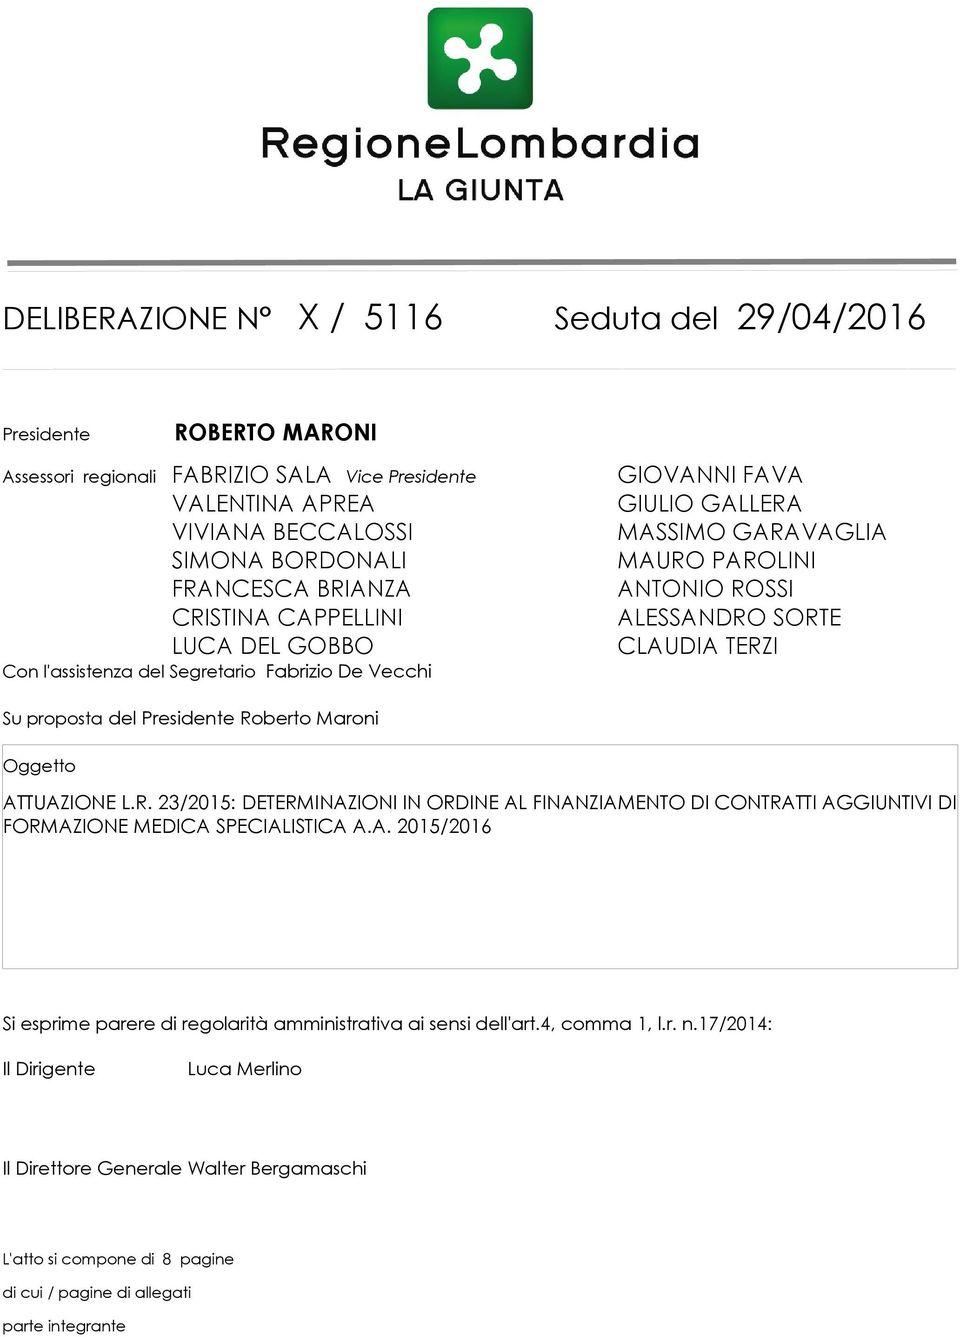 proposta del Presidente Roberto Maroni Oggetto ATTUAZIONE L.R. 23/2015: DETERMINAZIONI IN ORDINE AL FINANZIAMENTO DI CONTRATTI AGGIUNTIVI DI FORMAZIONE MEDICA SPECIALISTICA A.A. 2015/2016 Si esprime parere di regolarità amministrativa ai sensi dell'art.